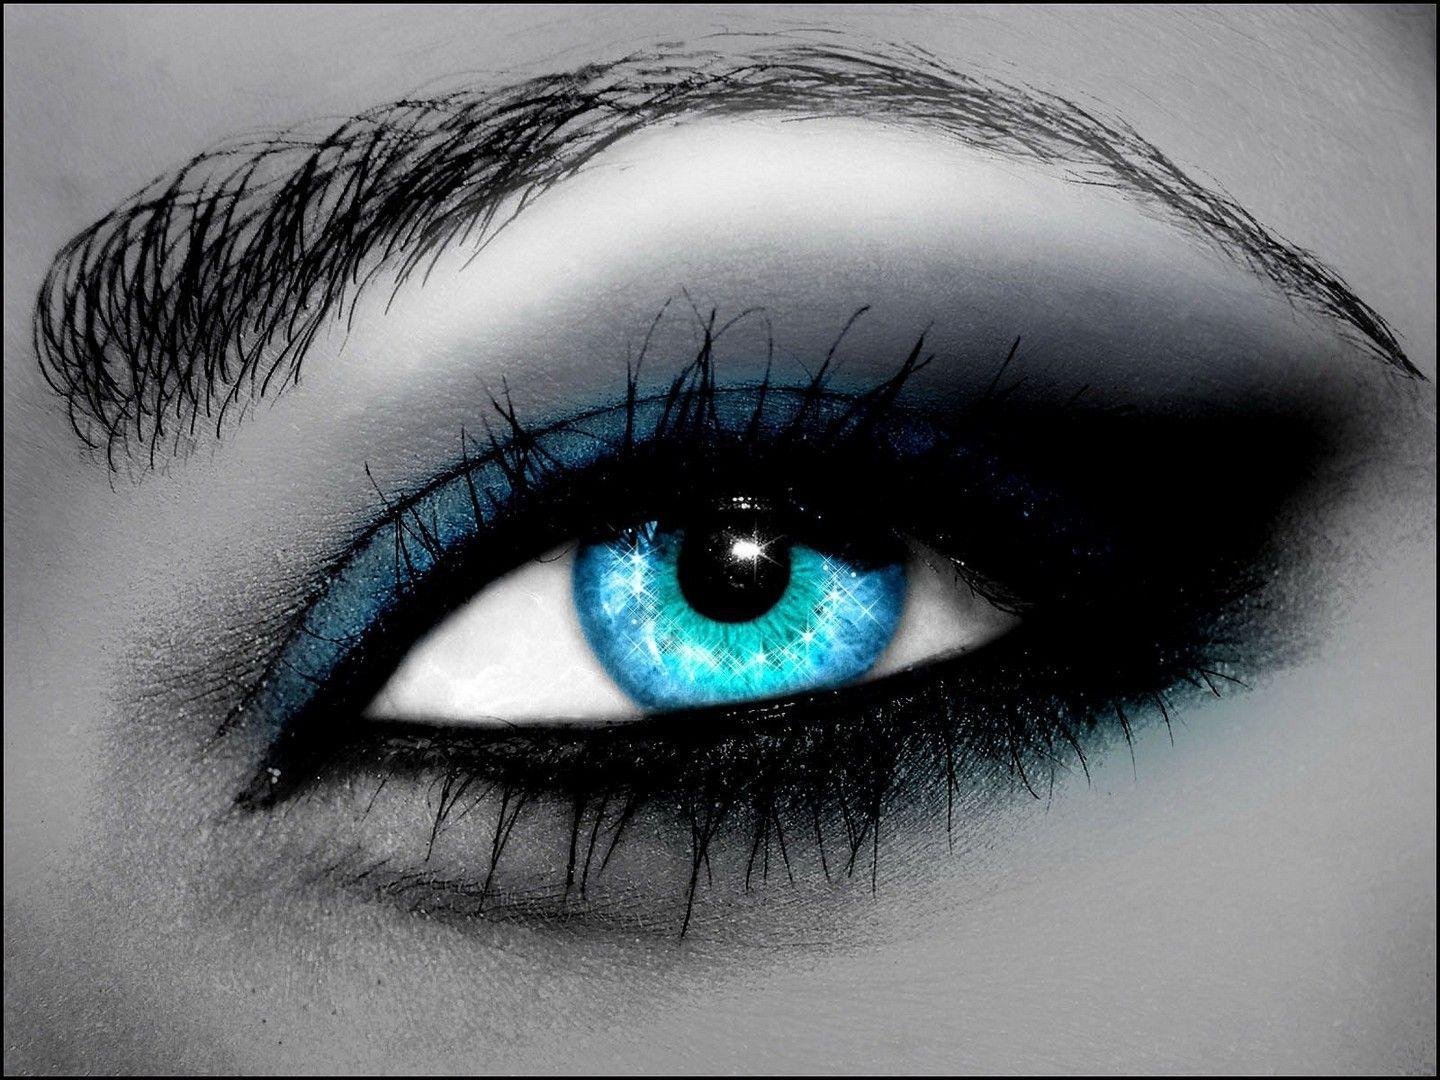 Blue eyes wallpaper. Eyes wallpaper HD. Blue eyes